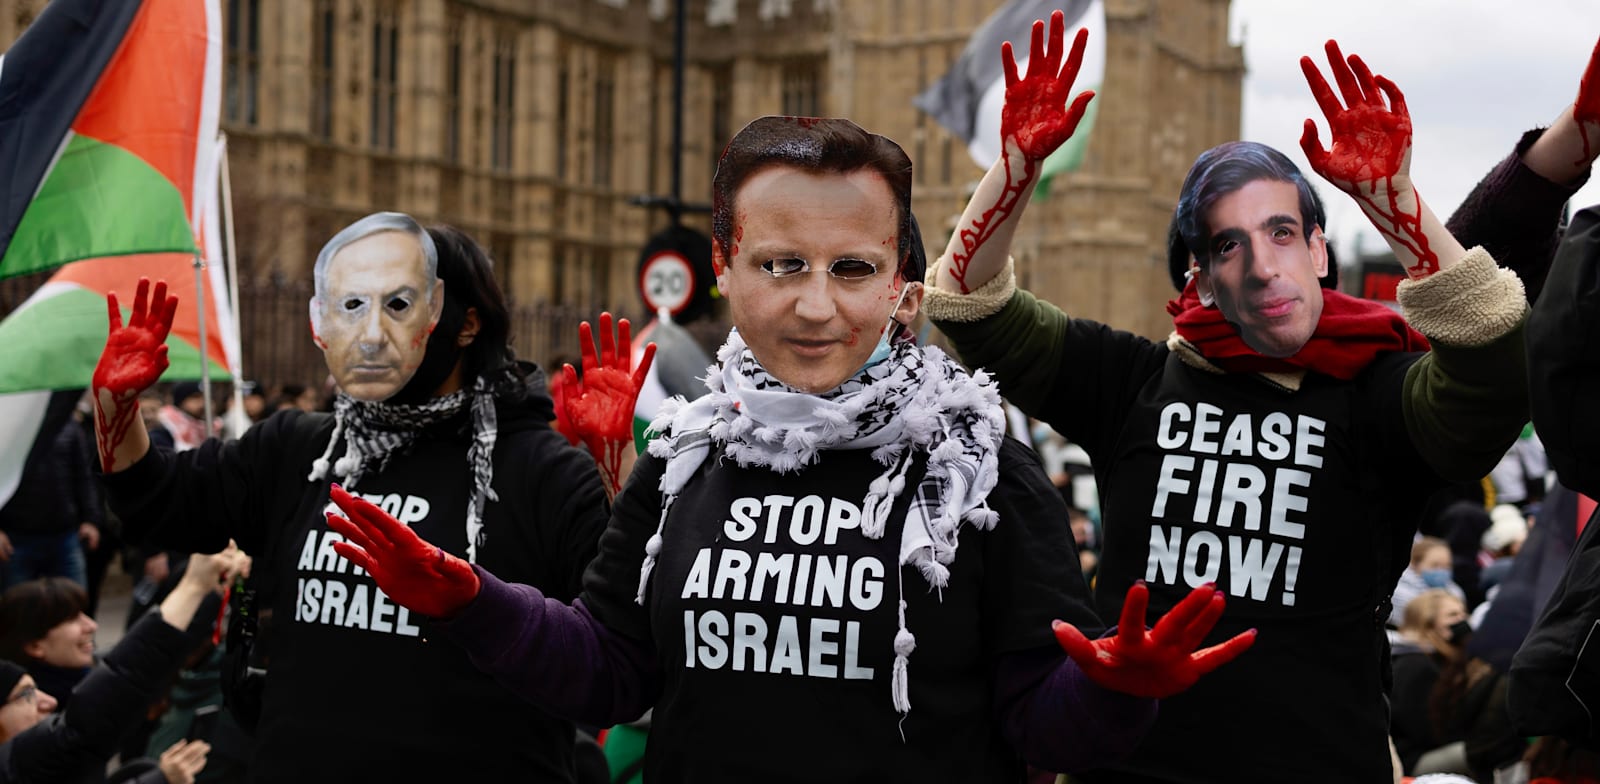 מפגינים פרו־פלסטינים בלונדון, בינואר / צילום: Reuters, SOPA Images